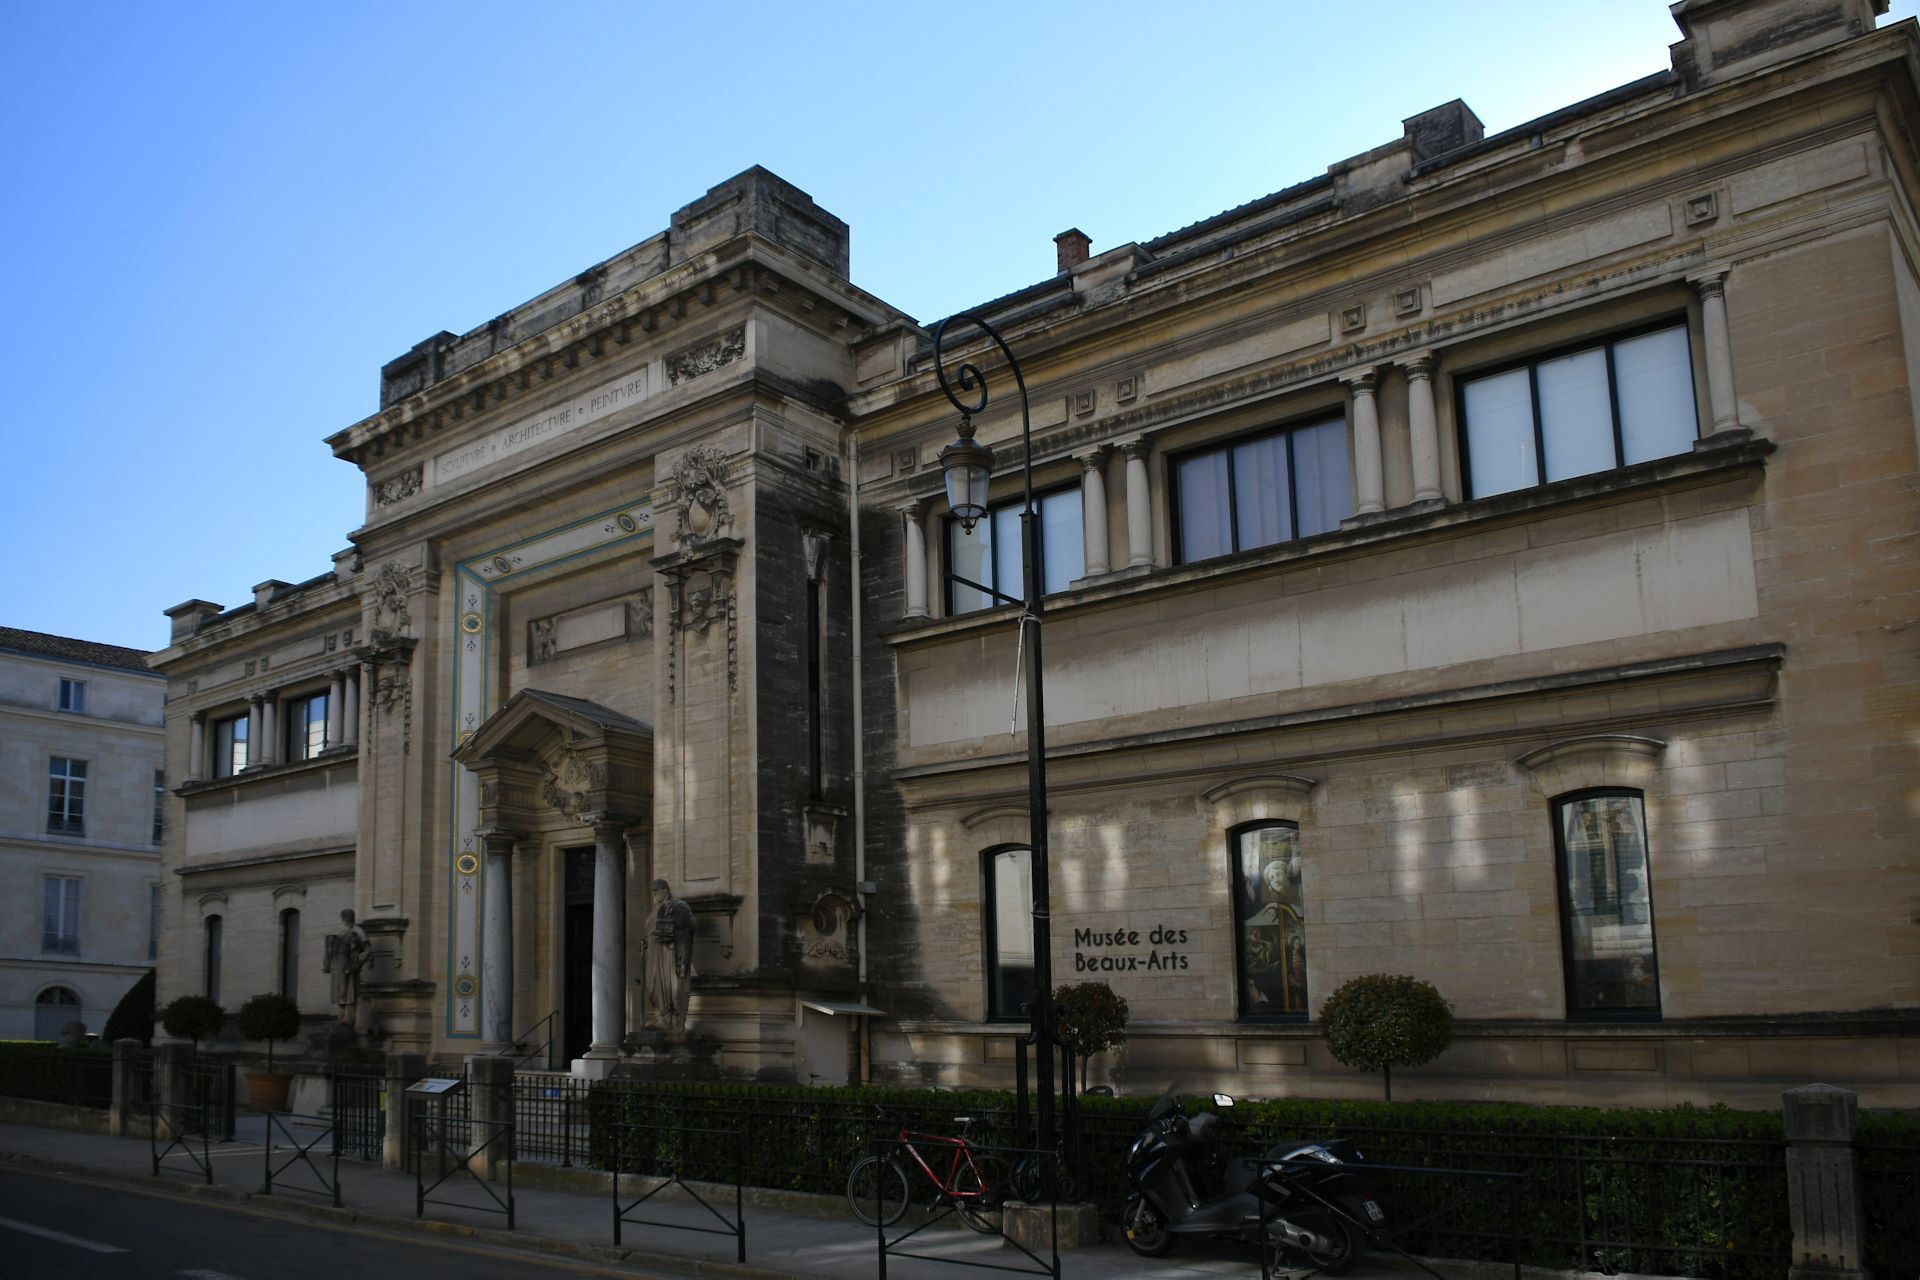 Musée de Beaux-Arts